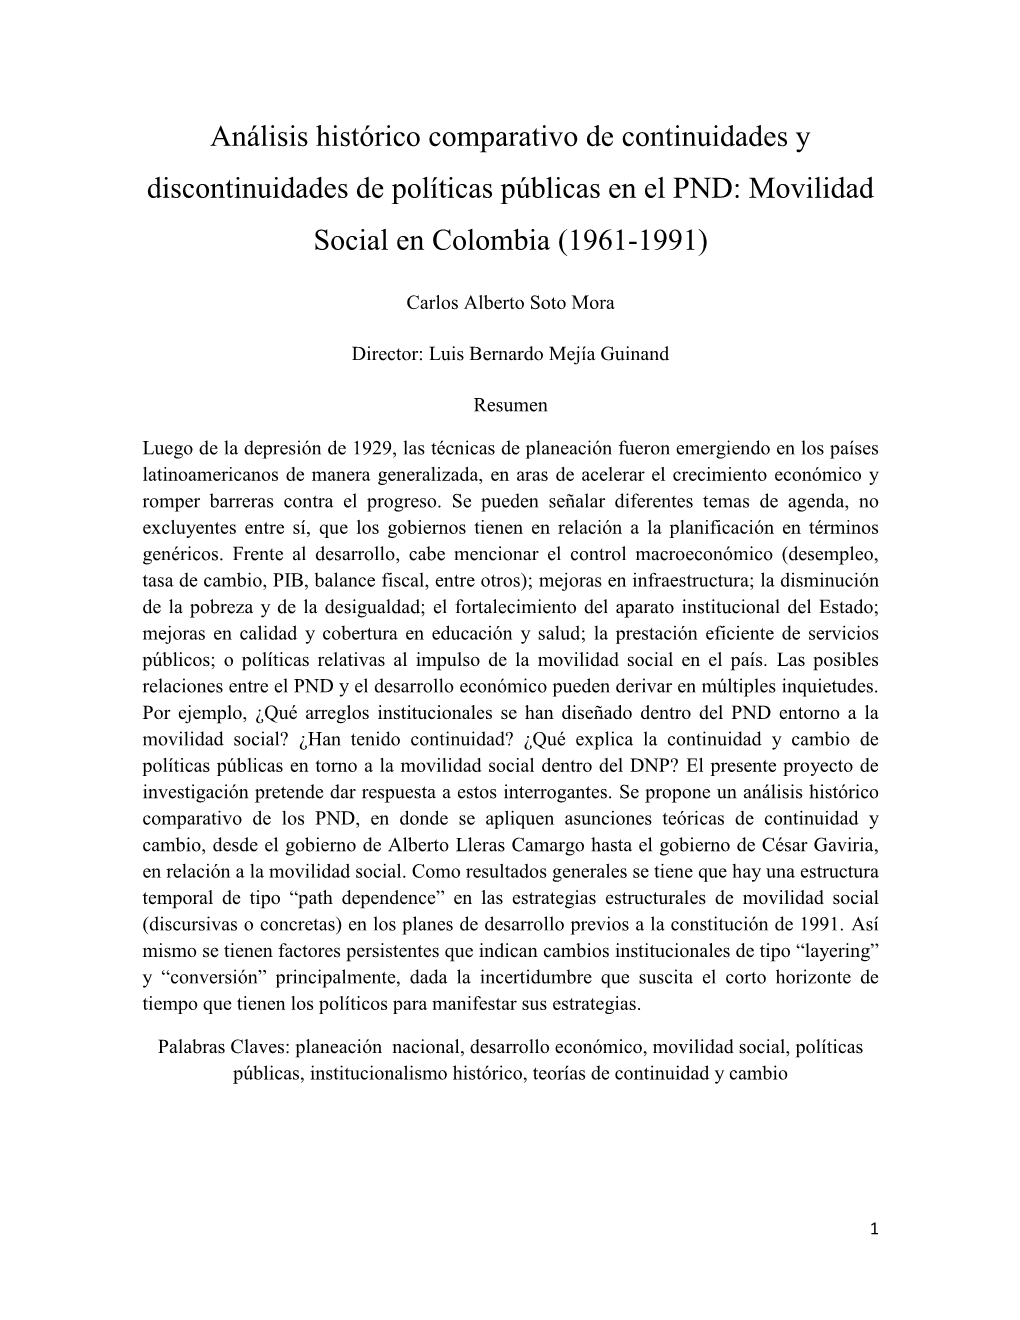 Análisis Histórico Comparativo De Continuidades Y Discontinuidades De Políticas Públicas En El PND: Movilidad Social En Colombia (1961-1991)